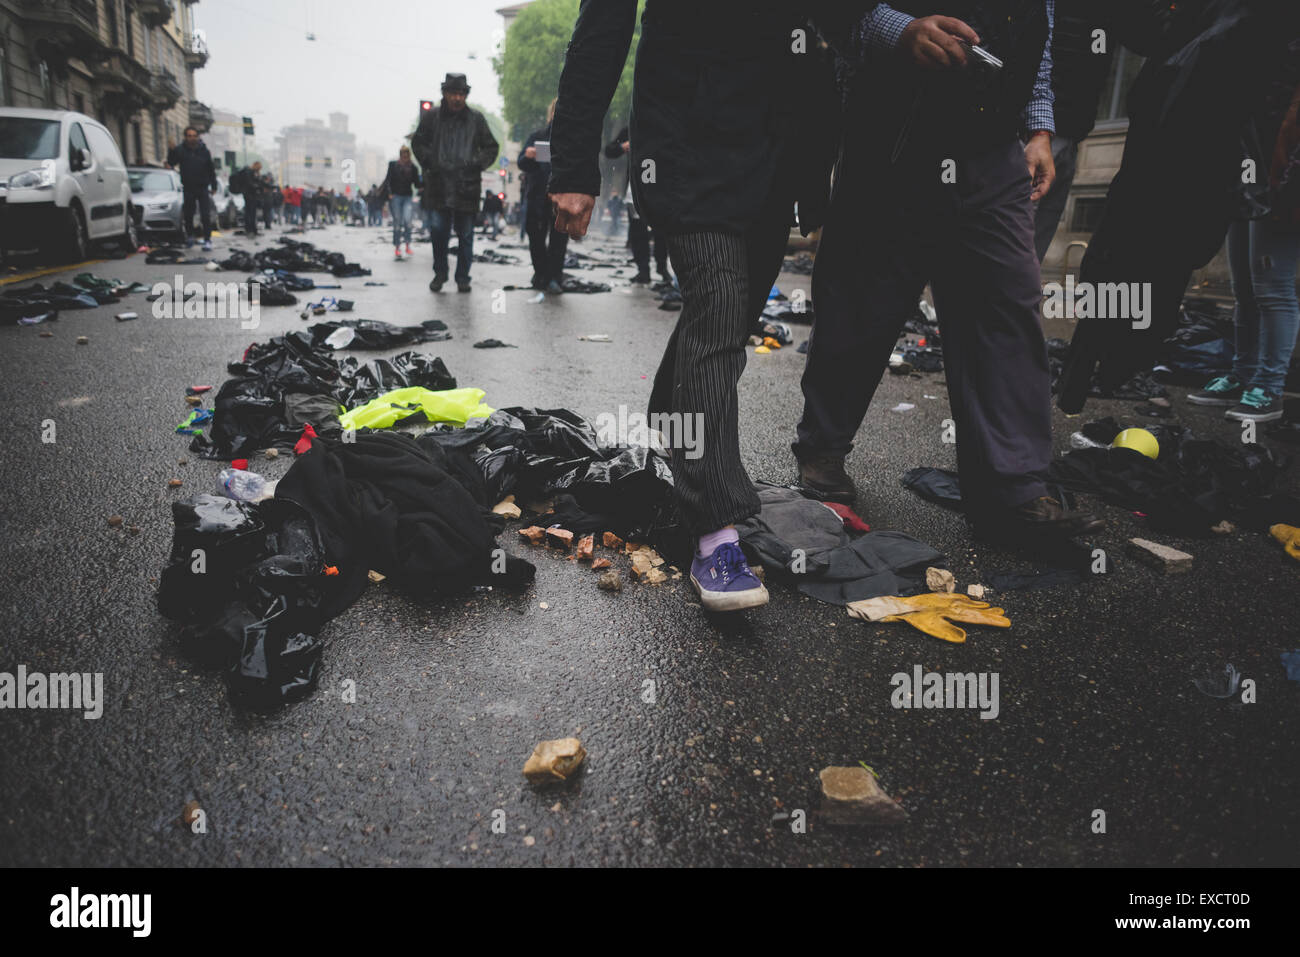 Milano, Italia - 1 maggio: manifestazione tenutasi a Milano il 1 maggio 2015. centro città distrutta da manifestant blocco nero Foto Stock